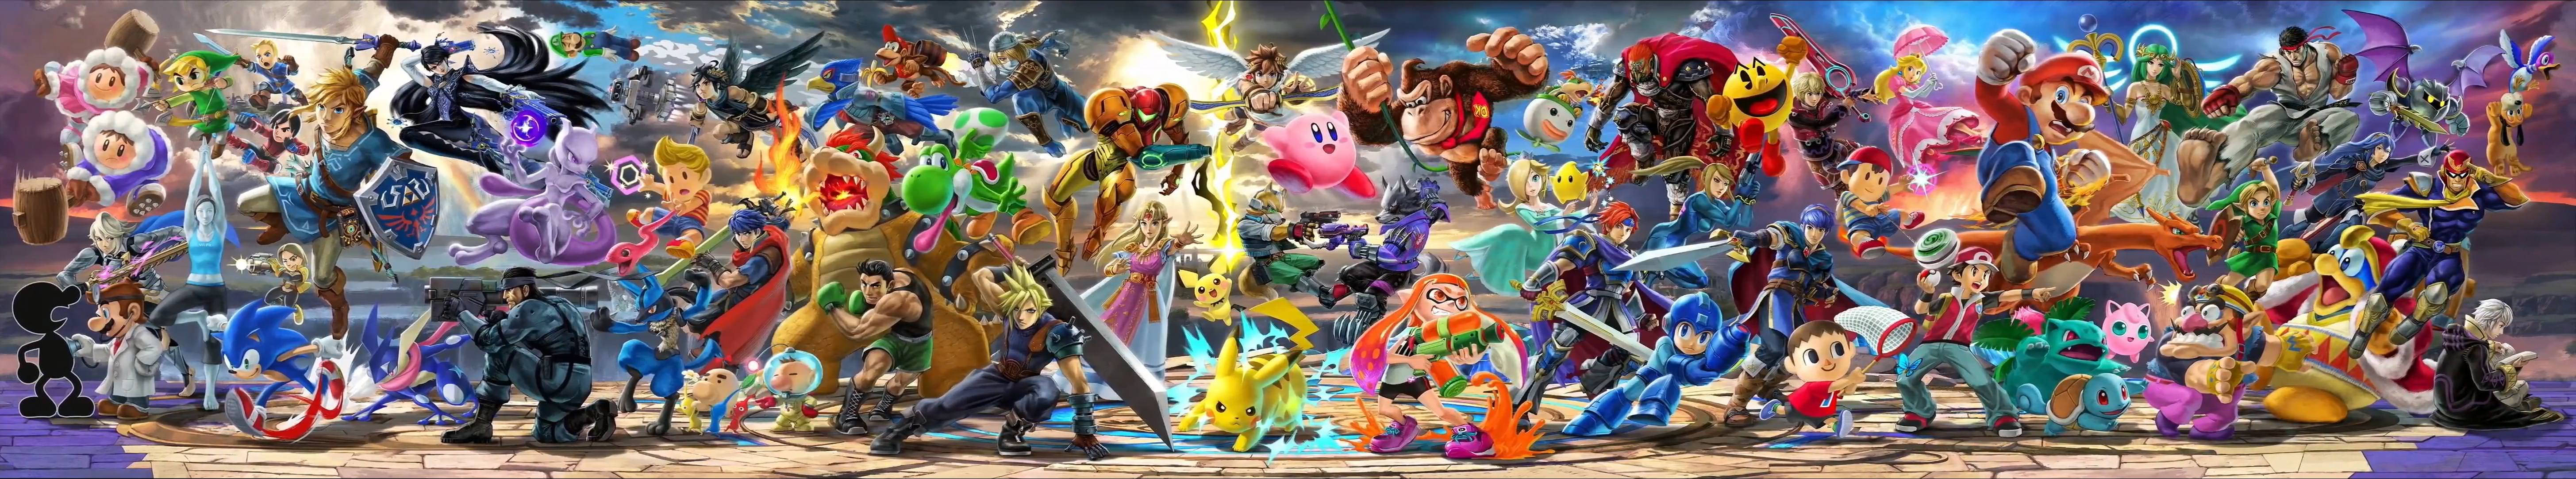 Super Smash Bros Ultimate Heroes Panorama Wallpaper